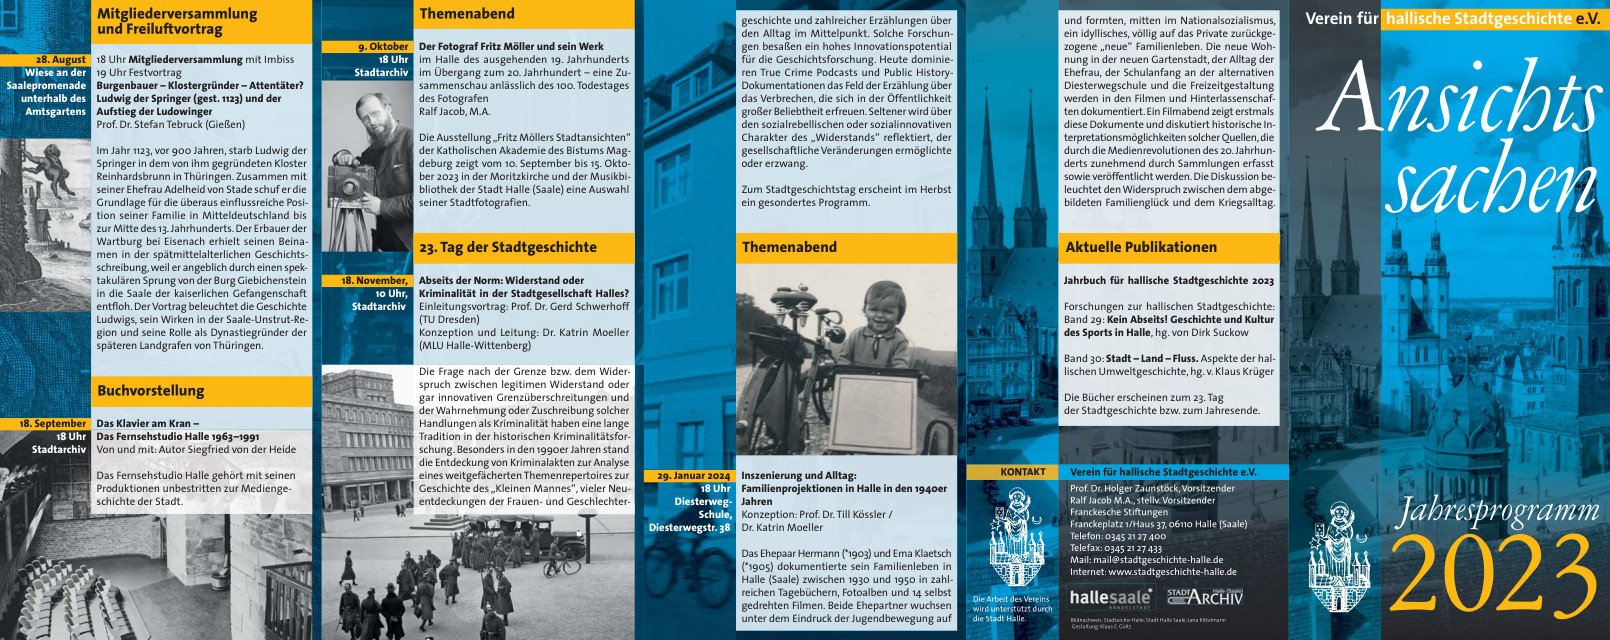 2023 Jahresprogramm Stadtgeschichte Halle - Seite 2